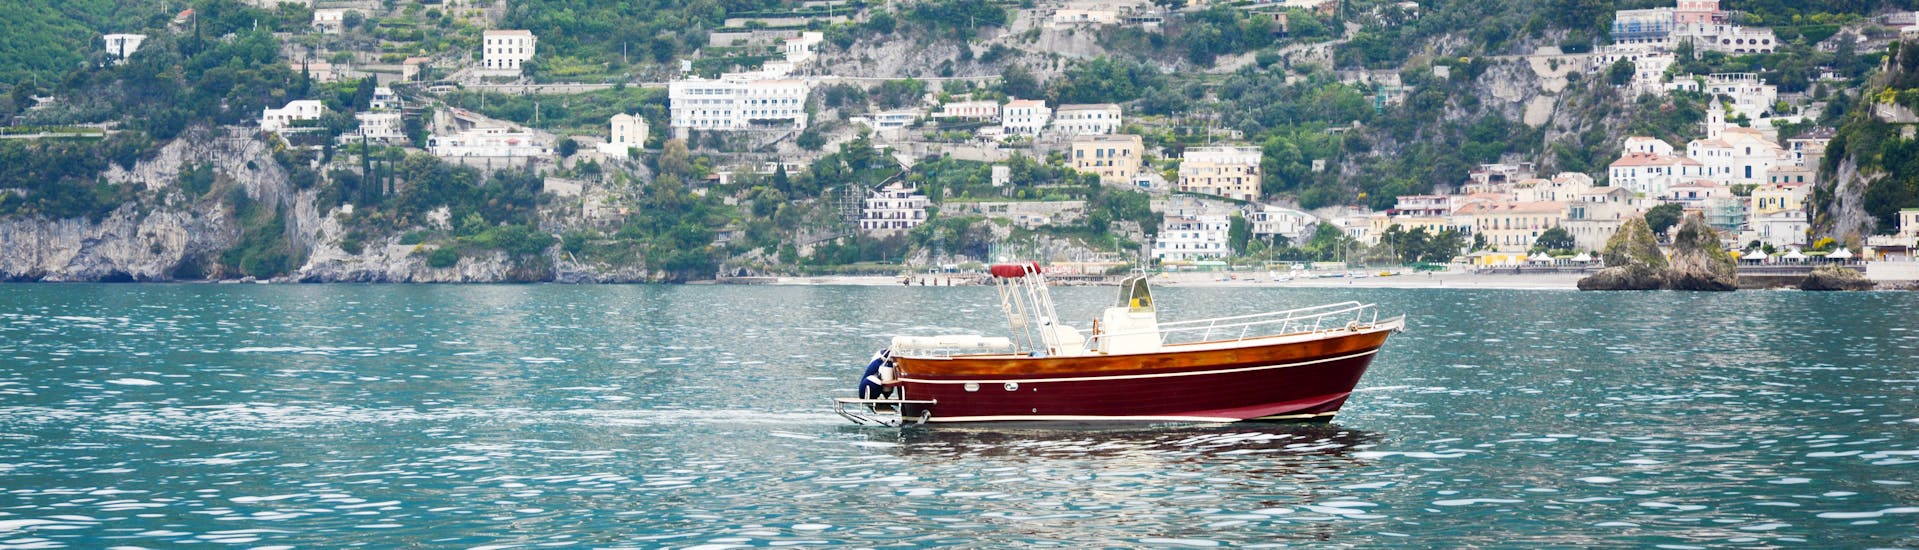 El barco de Blu Mediterraneo Costa Amalfitana durante el paseo en barco desde Salerno por la Costa Amalfitana.